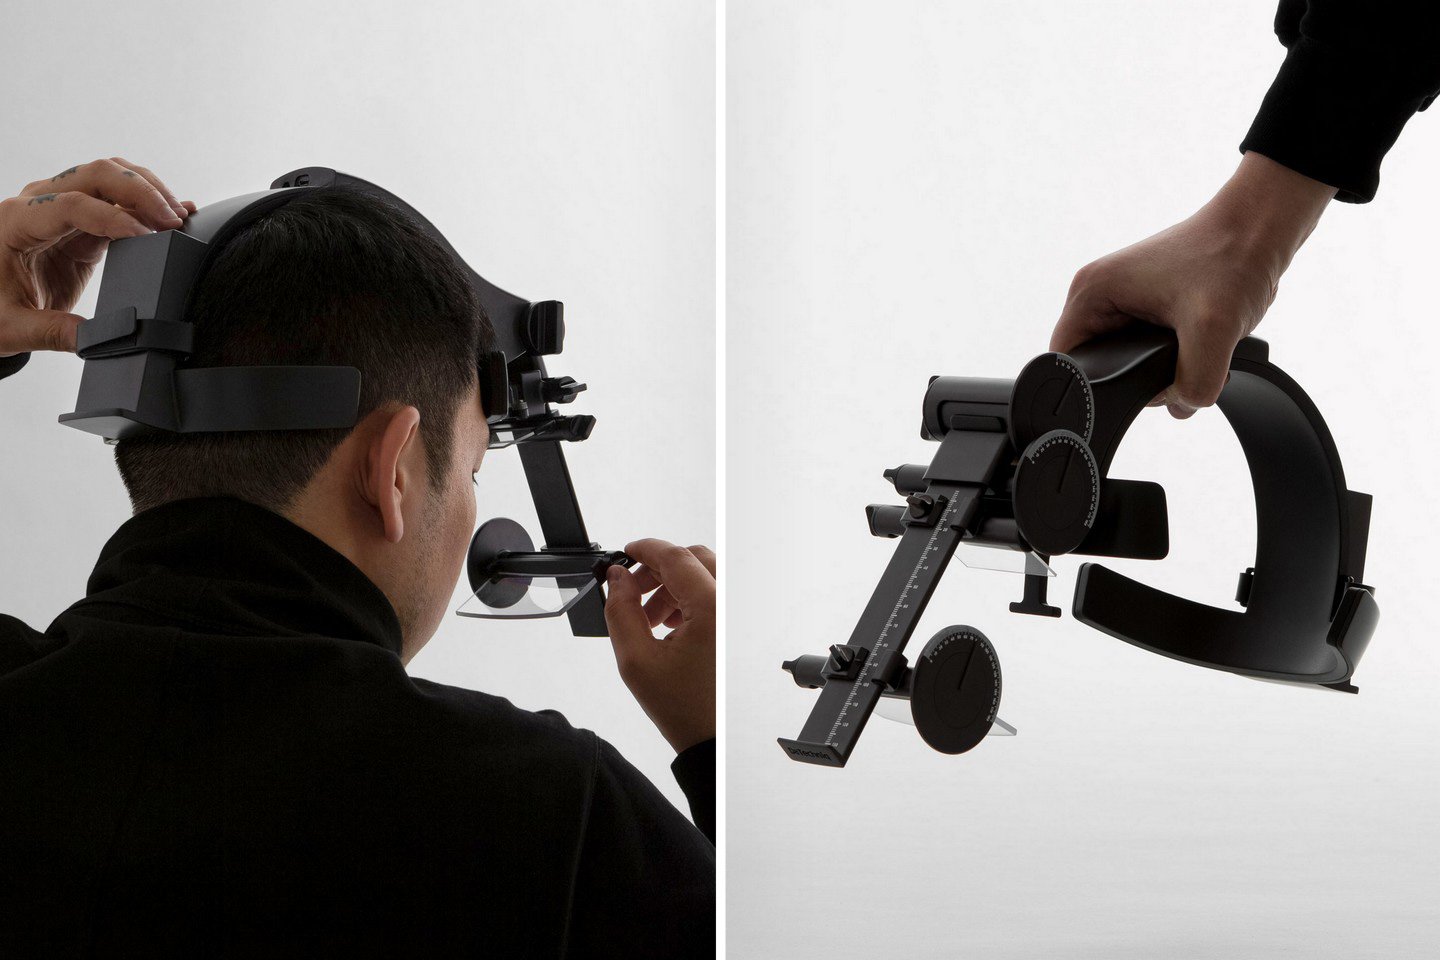 Das AR-Messinstrument wurde entwickelt, um zu besseren, ergonomischen Augmented-Reality-Displays beizutragen